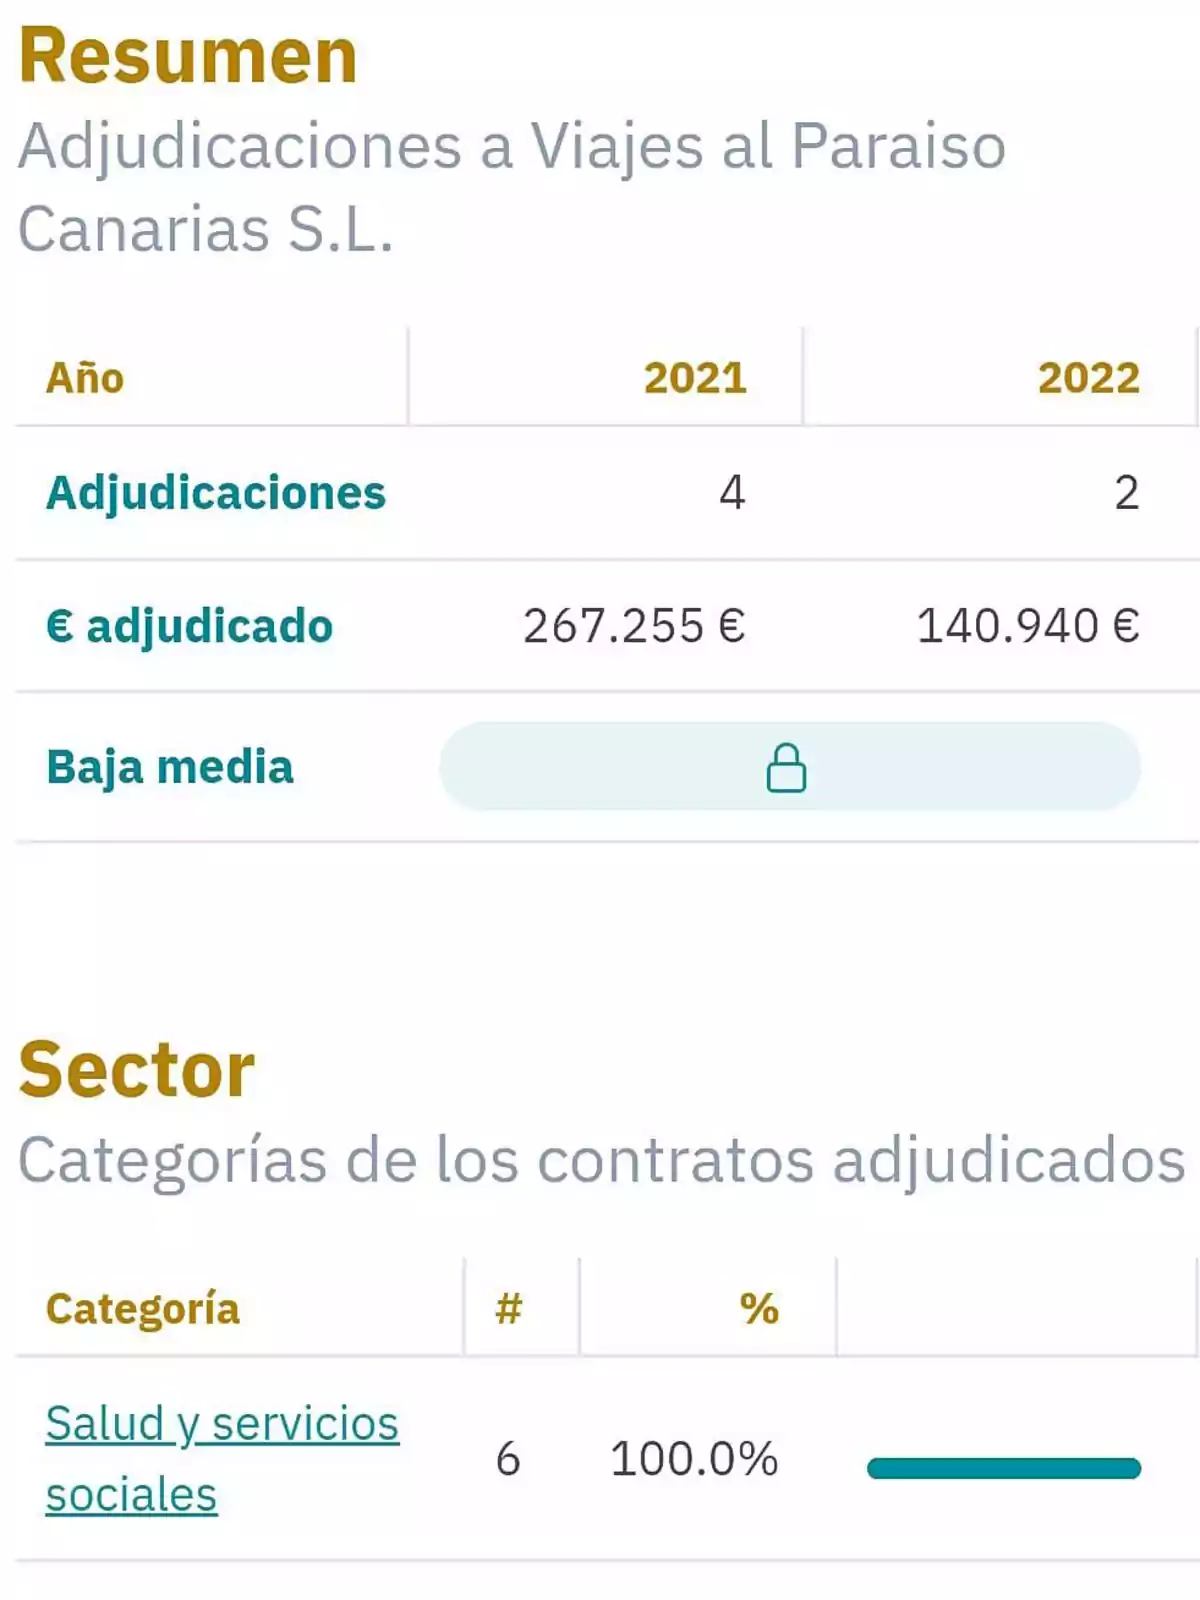 Resumen de adjudicaciones a Viajes al Paraiso Canarias S.L. en 2021 y 2022: En 2021, se adjudicaron 4 contratos por un total de 267.255 €, mientras que en 2022 se adjudicaron 2 contratos por un total de 140.940 €. La baja media está protegida. En el sector de Salud y servicios sociales, se adjudicaron 6 contratos, representando el 100.0% del total.